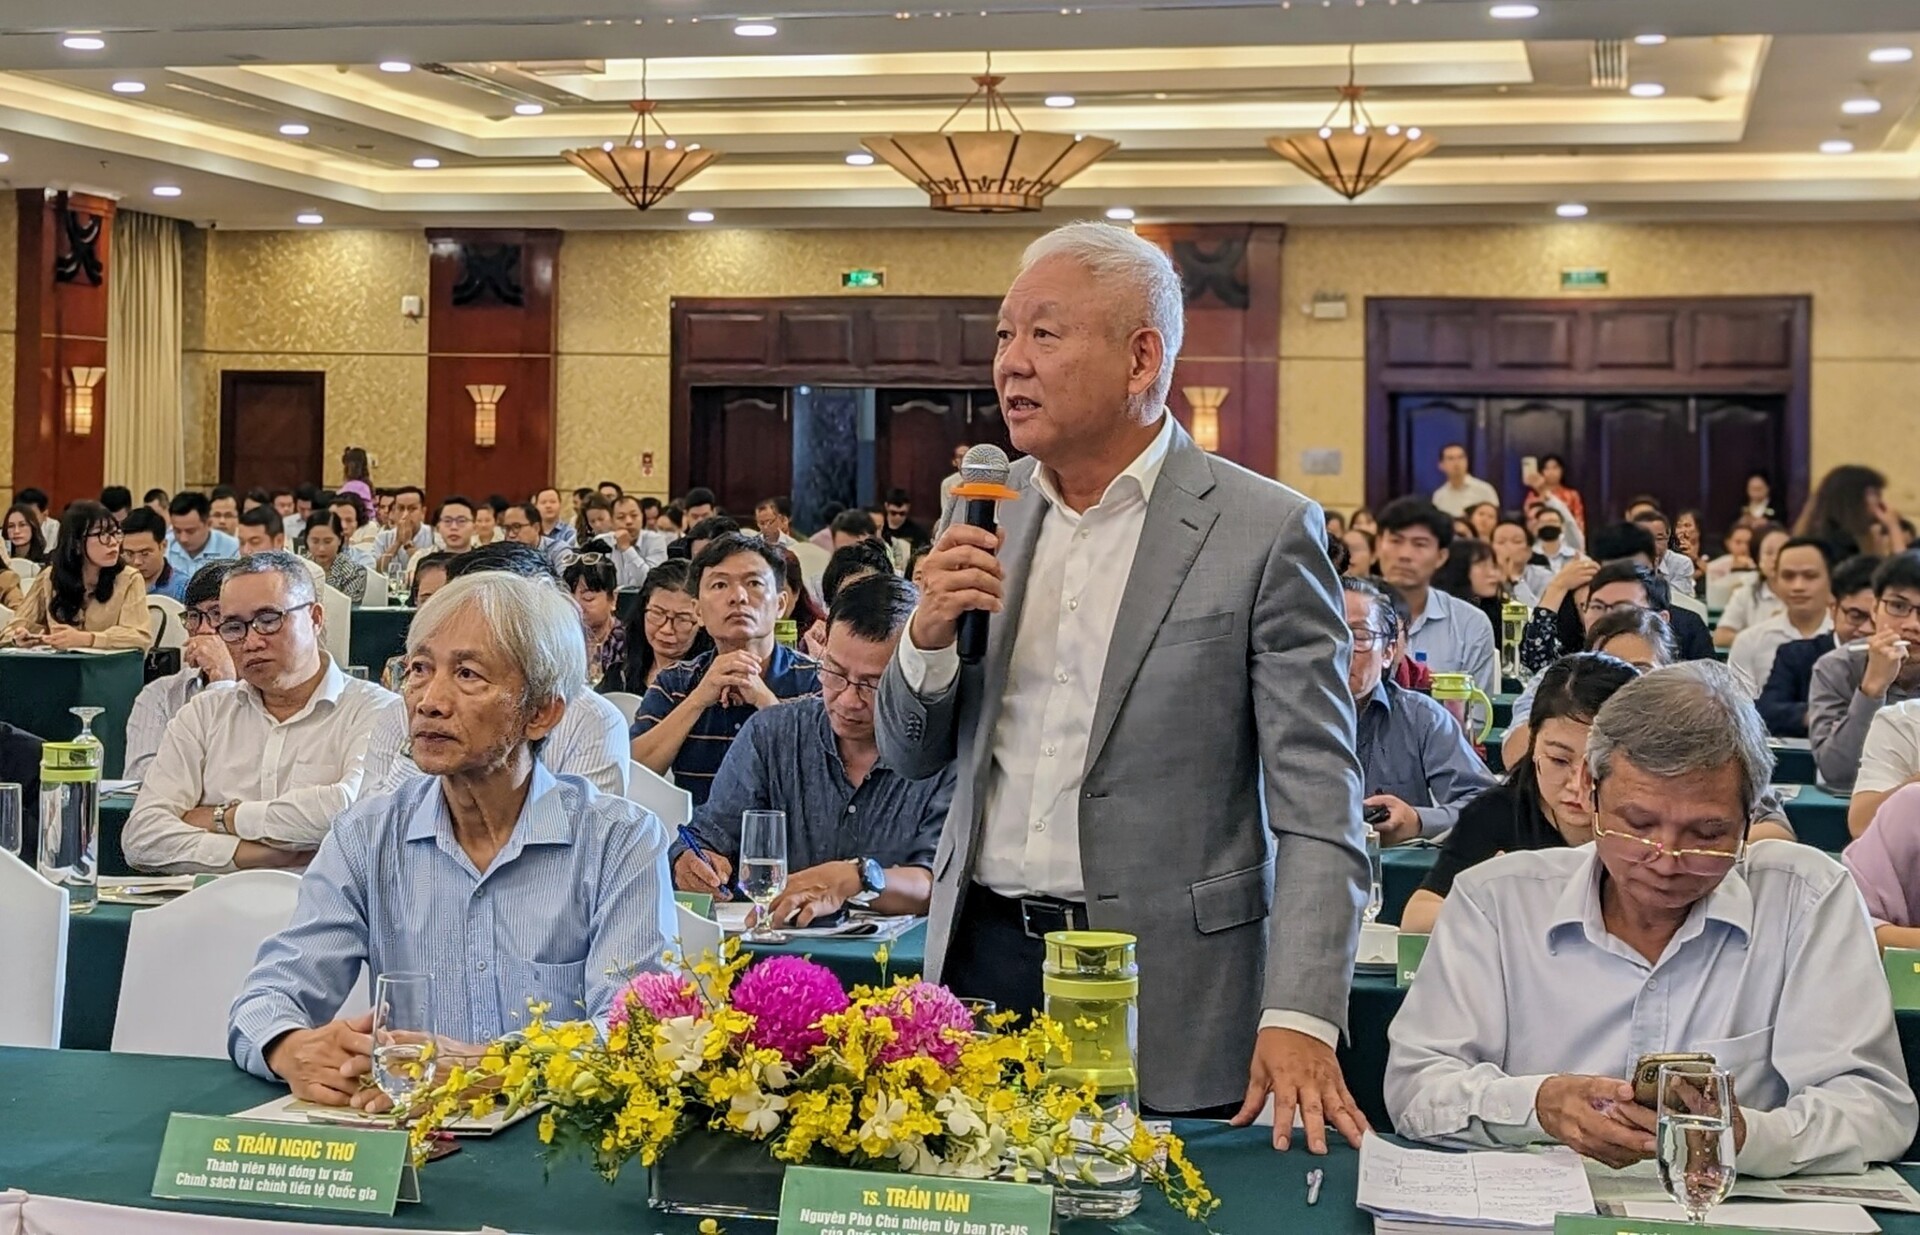 Tiến sĩ Trần Văn (đứng)- nguyên Phó Chủ nhiệm Ủy ban Tài chính – Ngân sách của Quốc hội